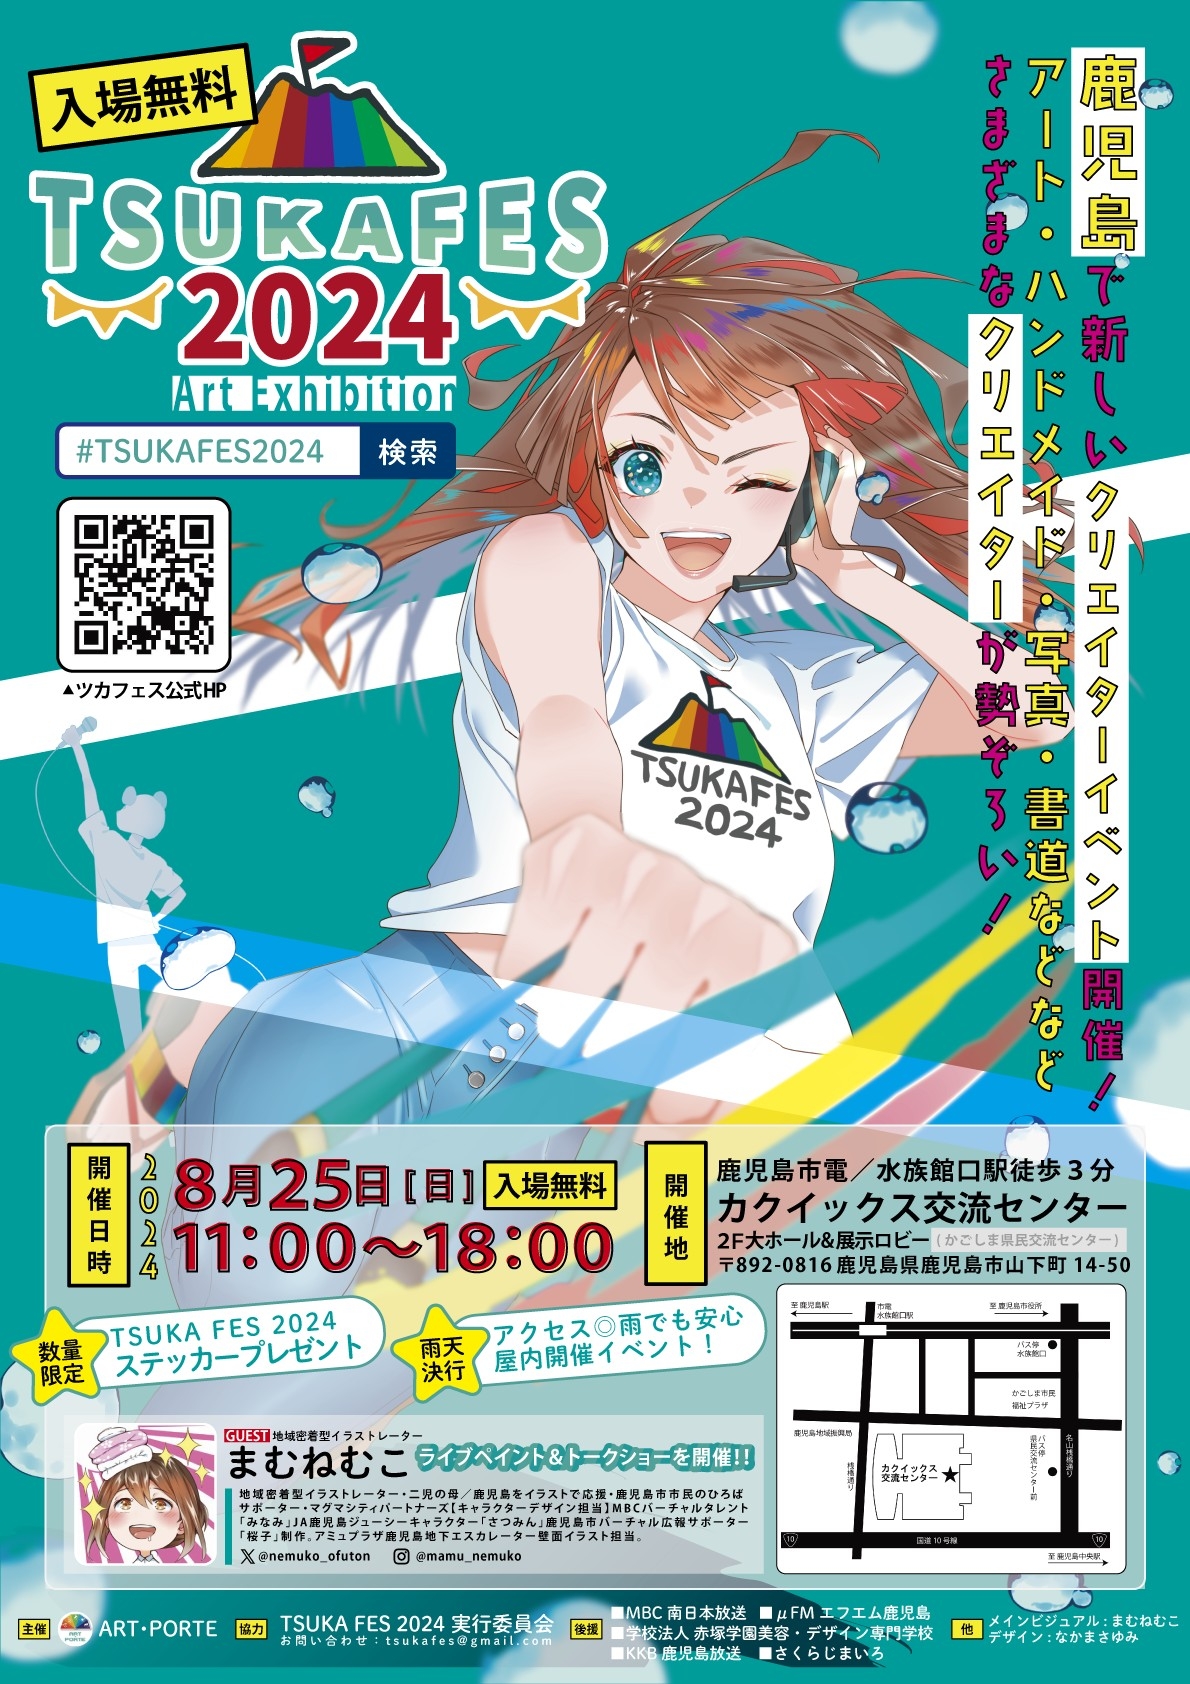 【鹿児島市】Art Exhibition TSUKA FES 2024